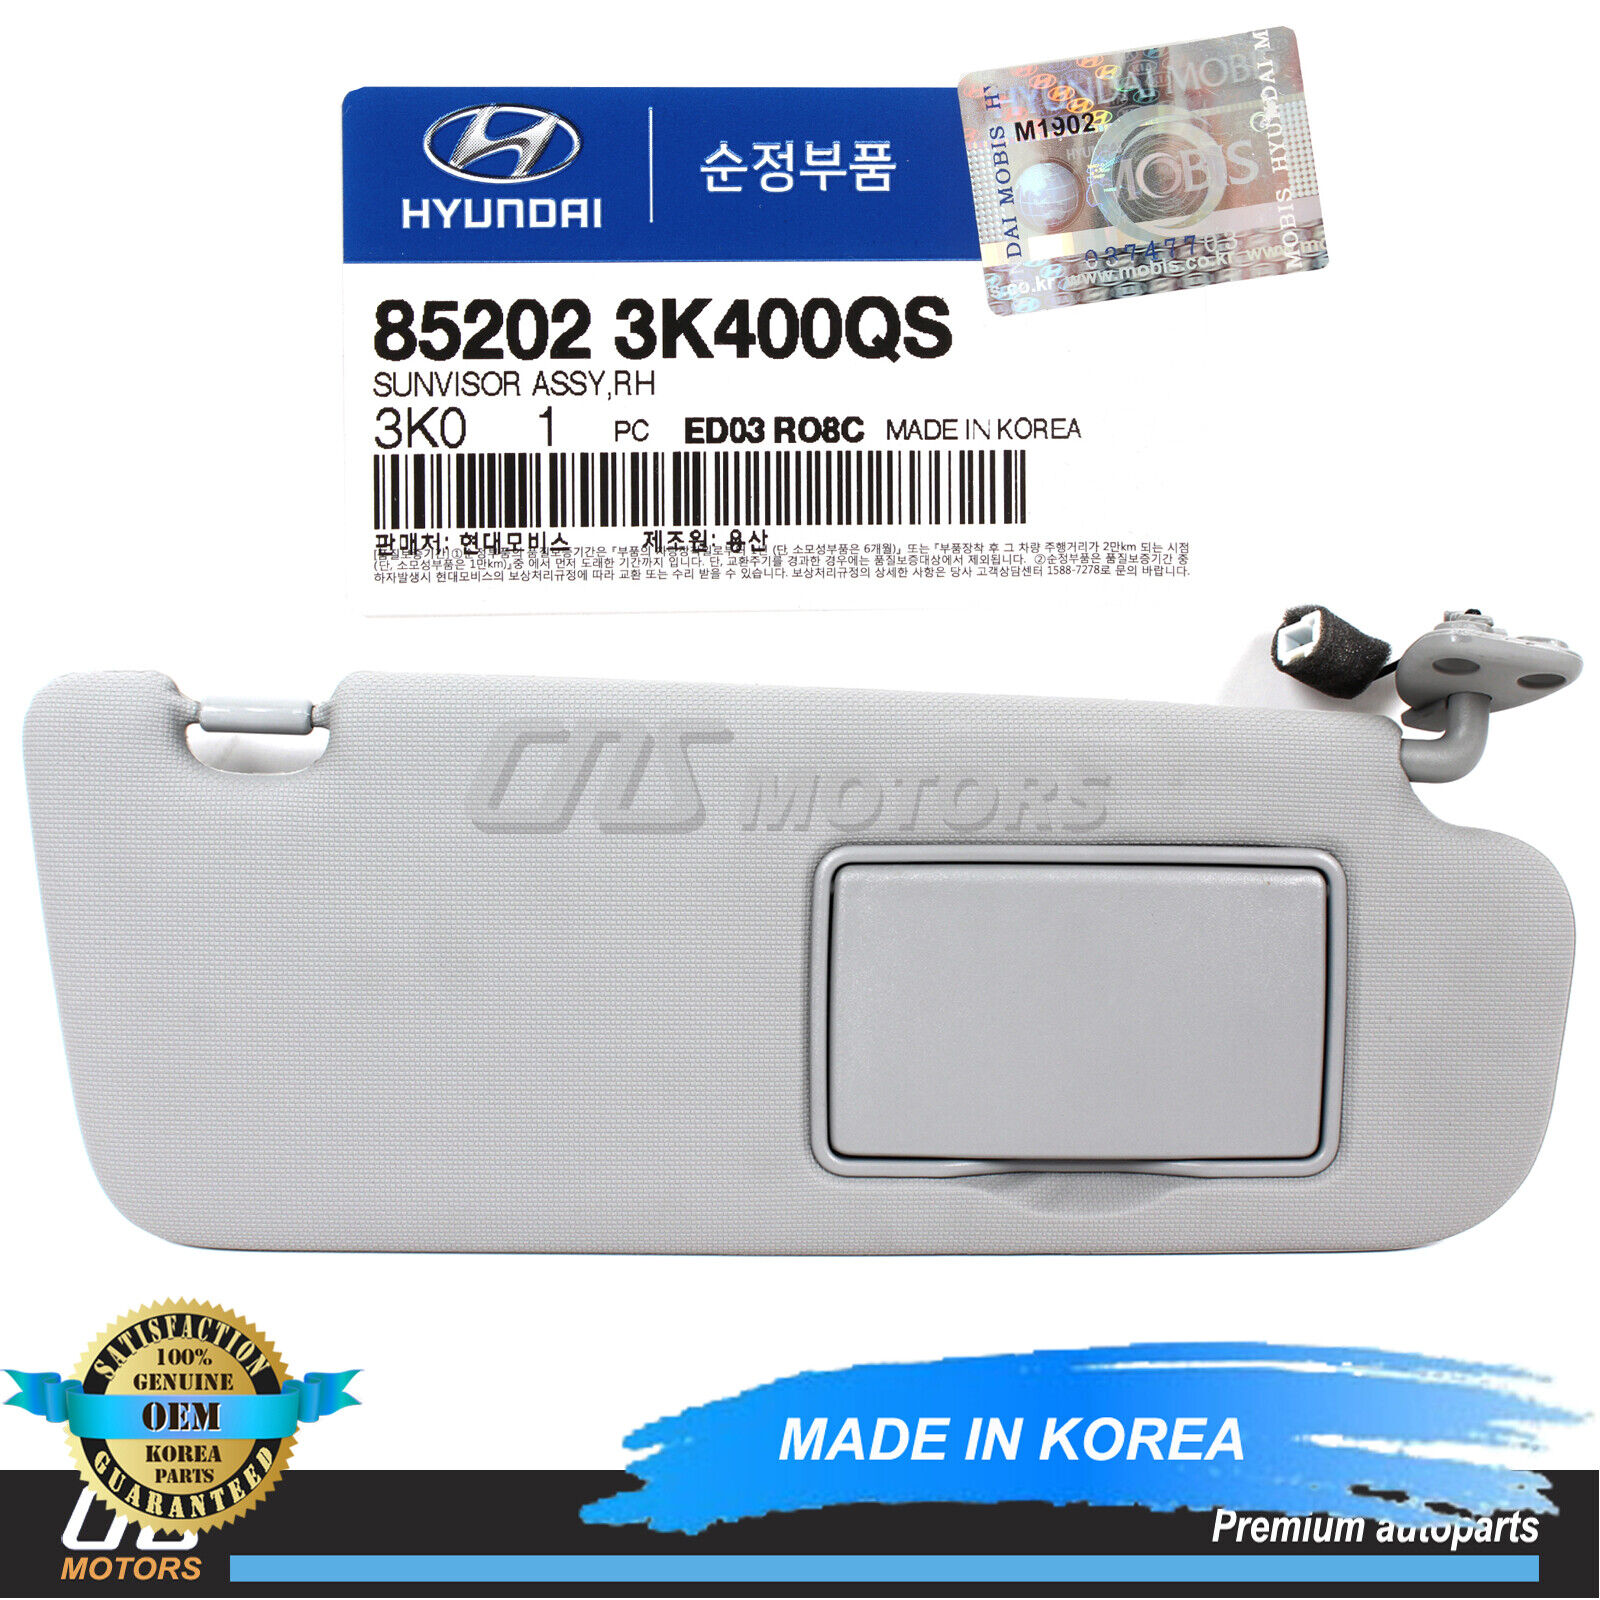 ✅GENUINE✅ Sun Visor Gray Passenger RH for 06-10 Hyundai Sonata OEM 852023K400QS